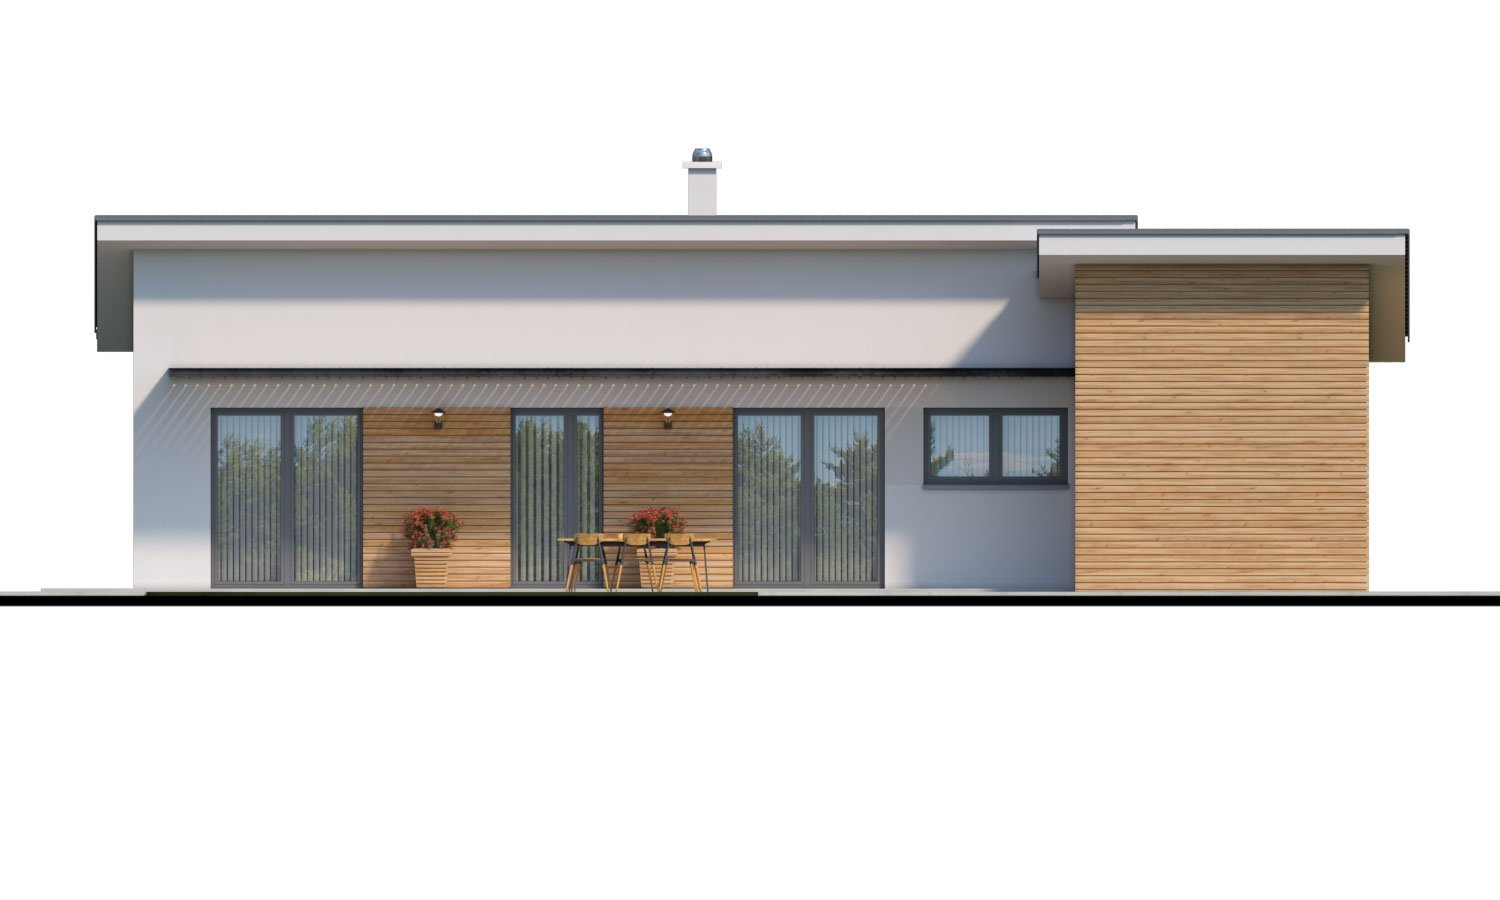 Moderný malý murovaný rodinný dom s garážou, pultovou strechou. Možná realizácia s dvojgarážou, alebo bez garáže. Vhodný aj ako dvojdom, alebo do radovej zástavby.